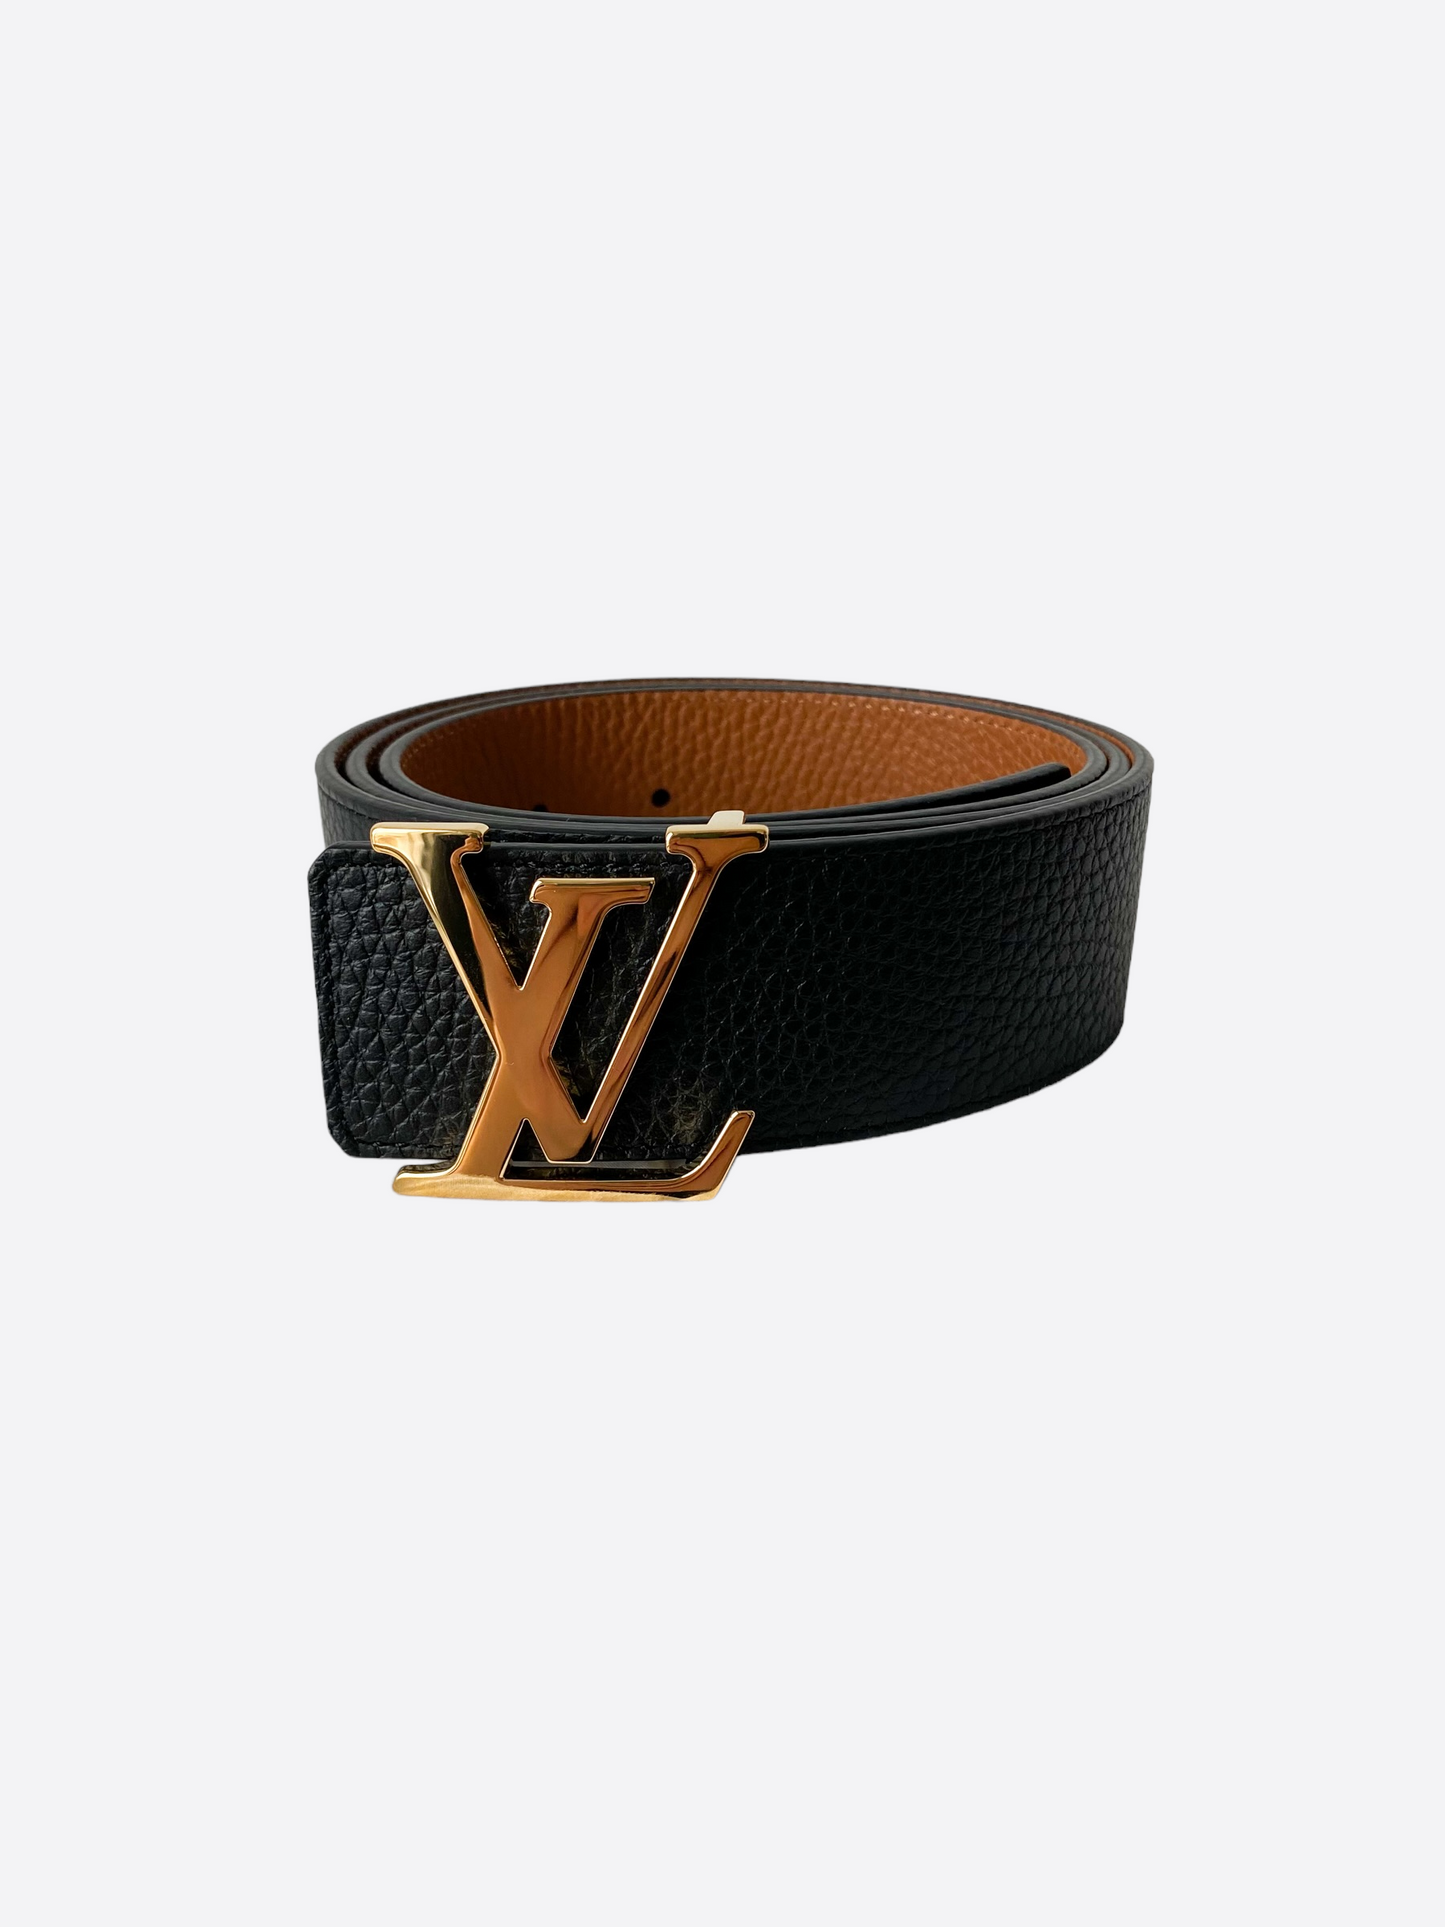 Louis Vuitton LV Initiales 40mm Reversible Belt Brown Monogram. Size 85 cm